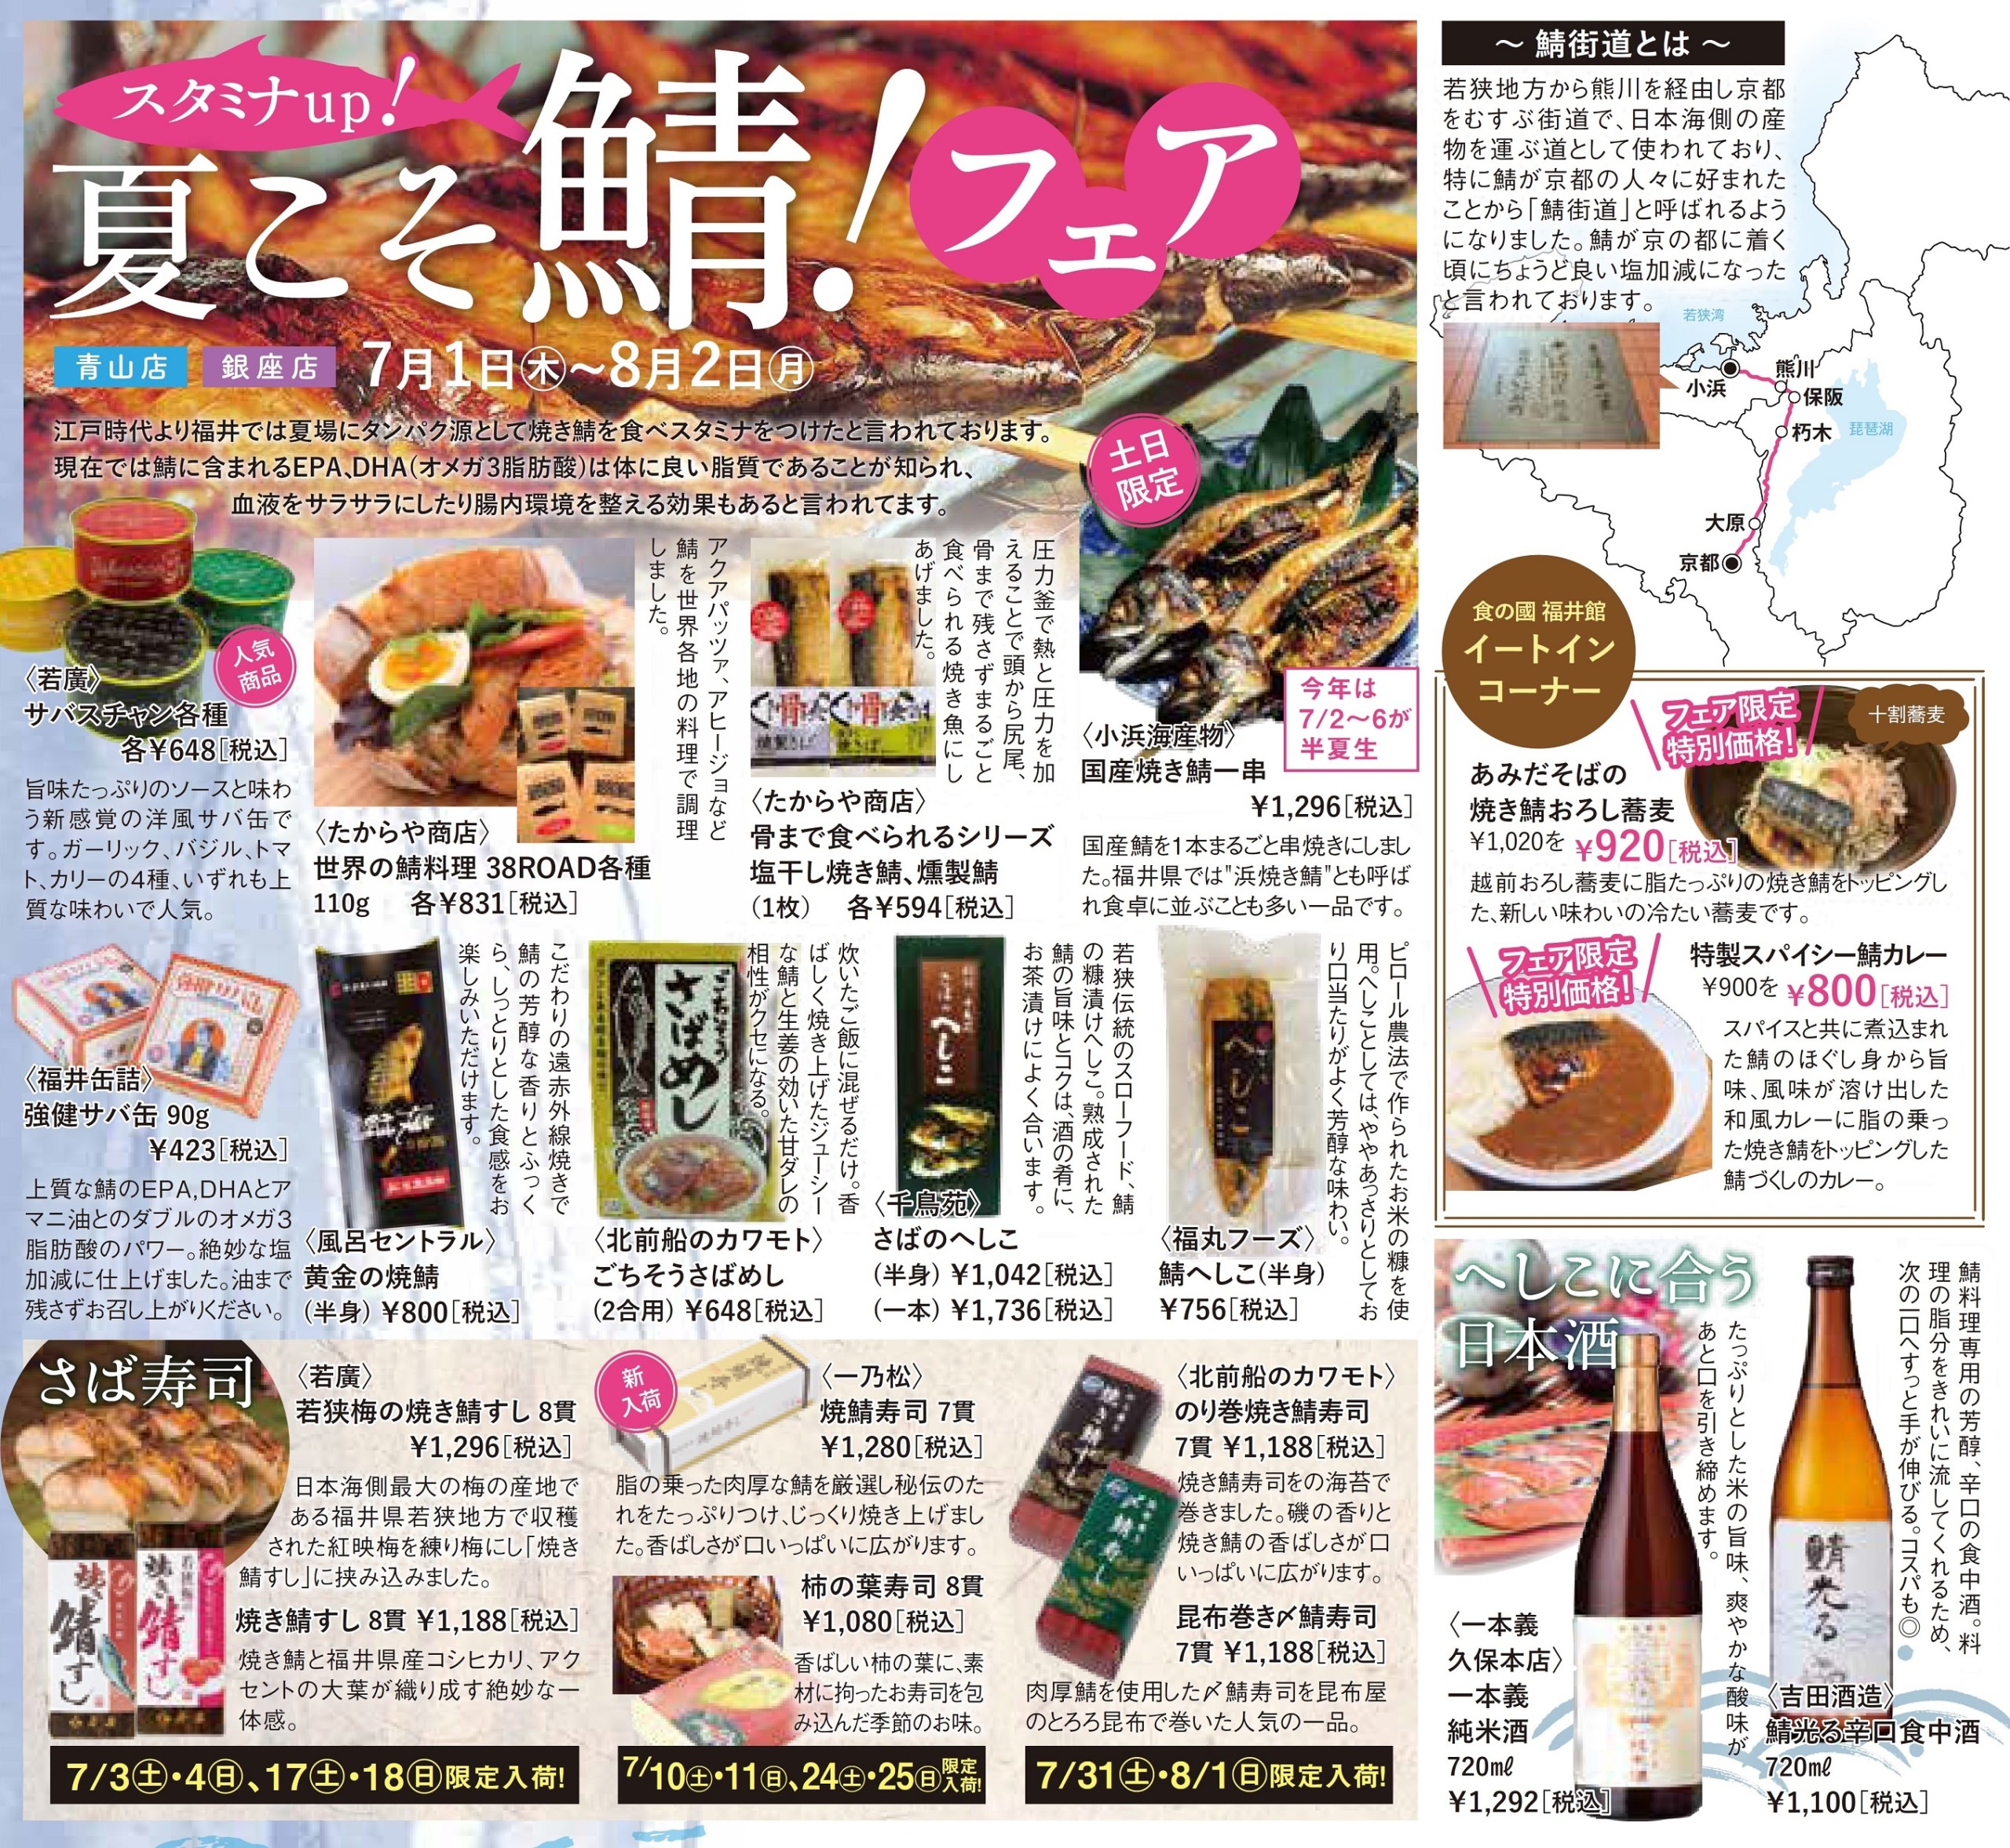 冷凍食品ブランド『凍眠市場』の美味しさが伝わる
「凍眠市場ギフトカード」に1万円の新カードが登場